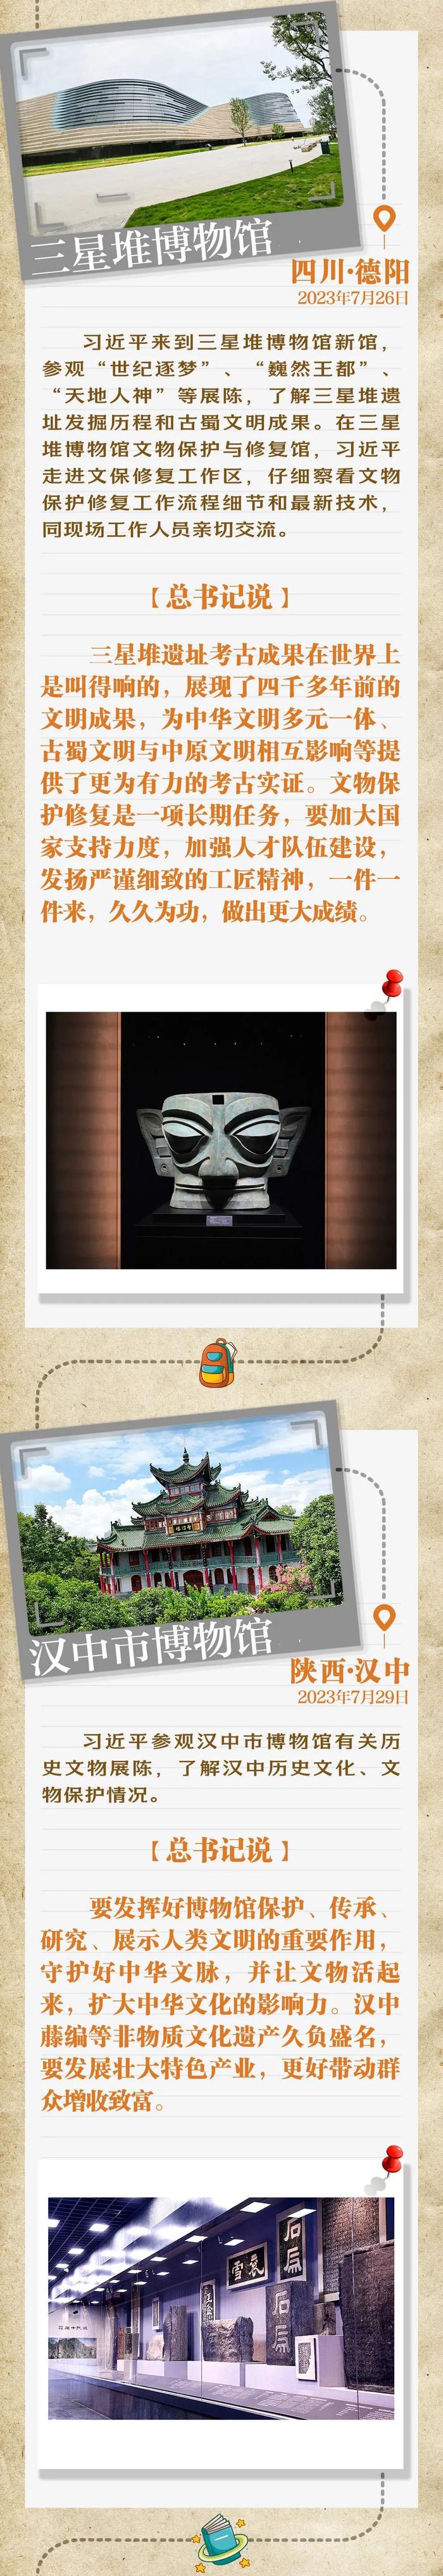 跟着总书记感受博物馆里中国优秀传统文化的魅力